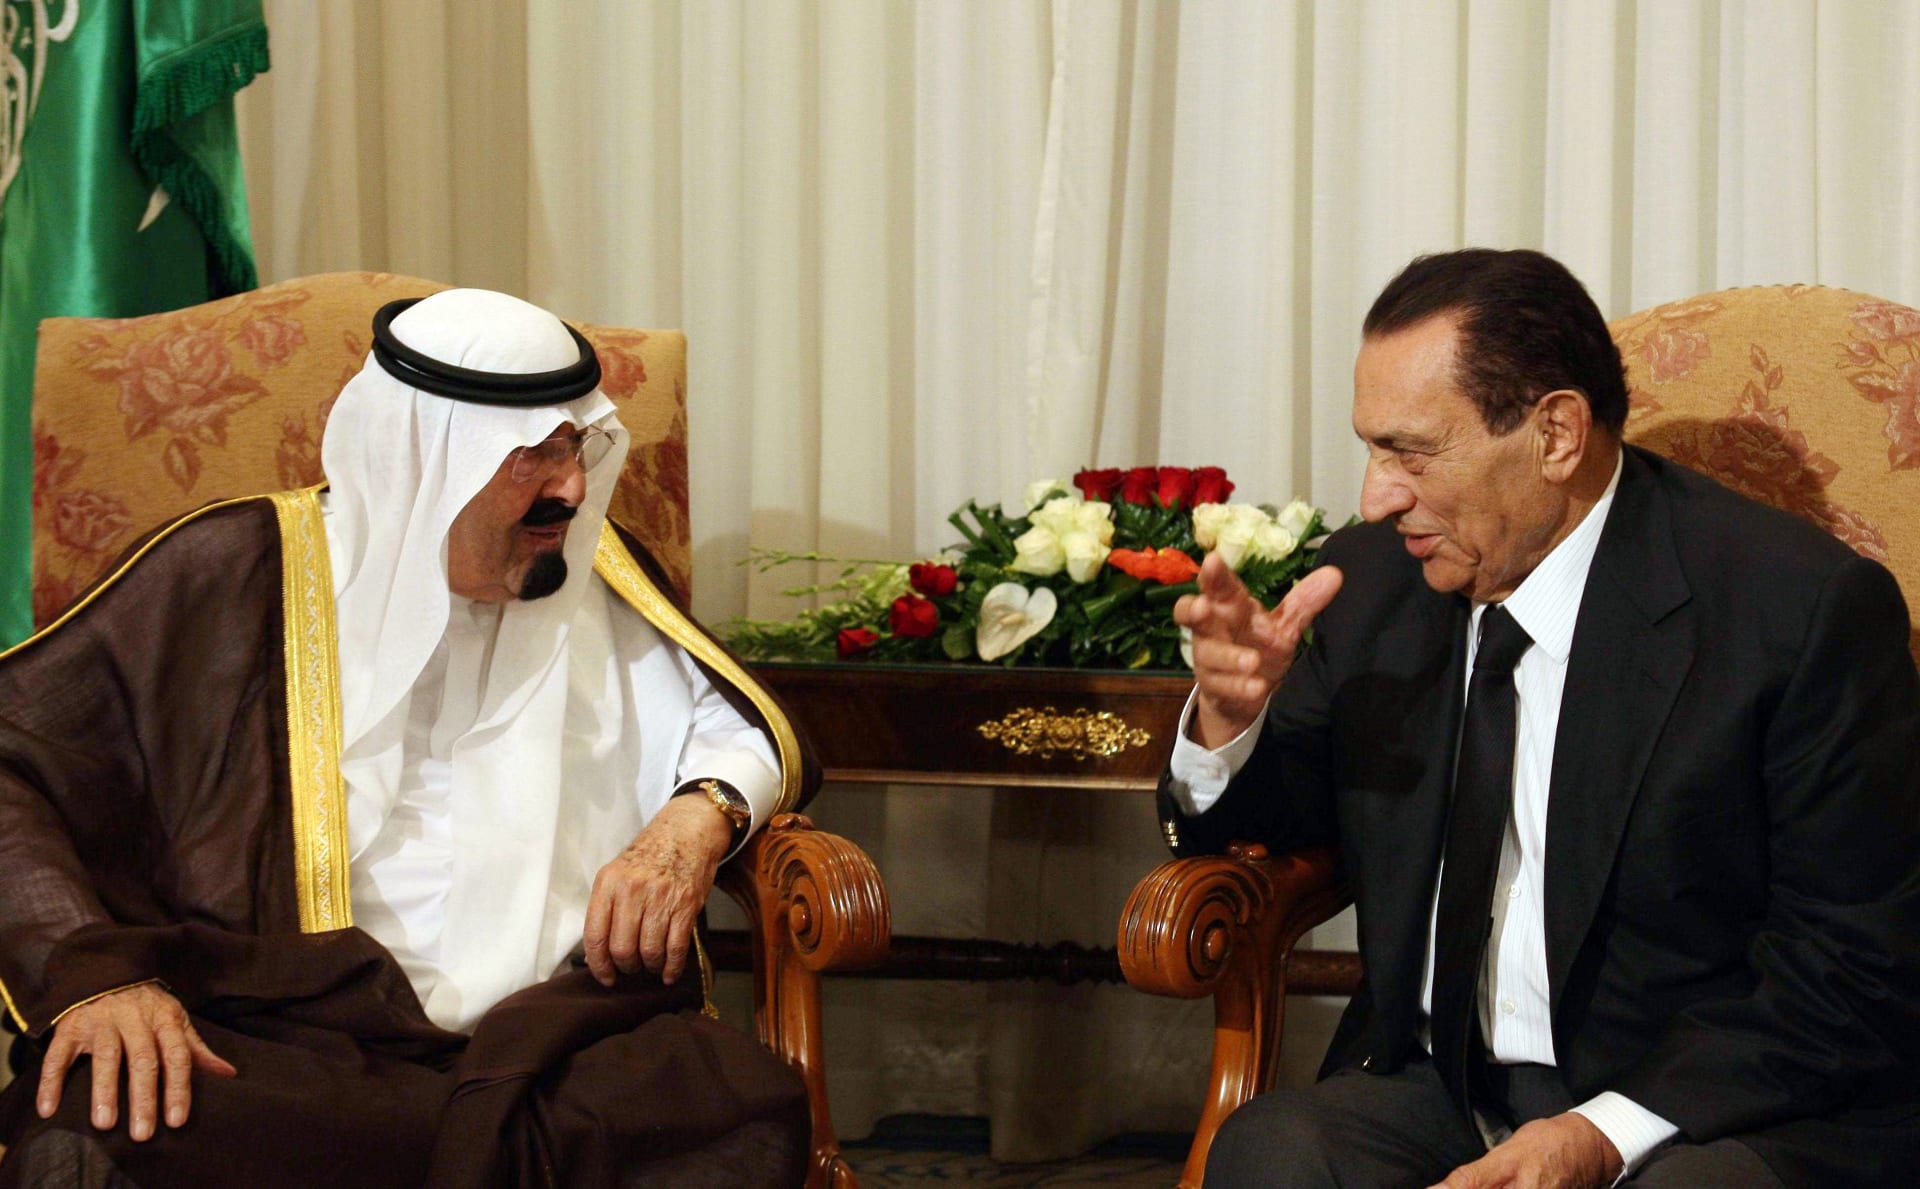 علاء مبارك ينشر فيديو لوالده مع الملك عبدالله بن عبدالعزيز وهكذا علق عليه